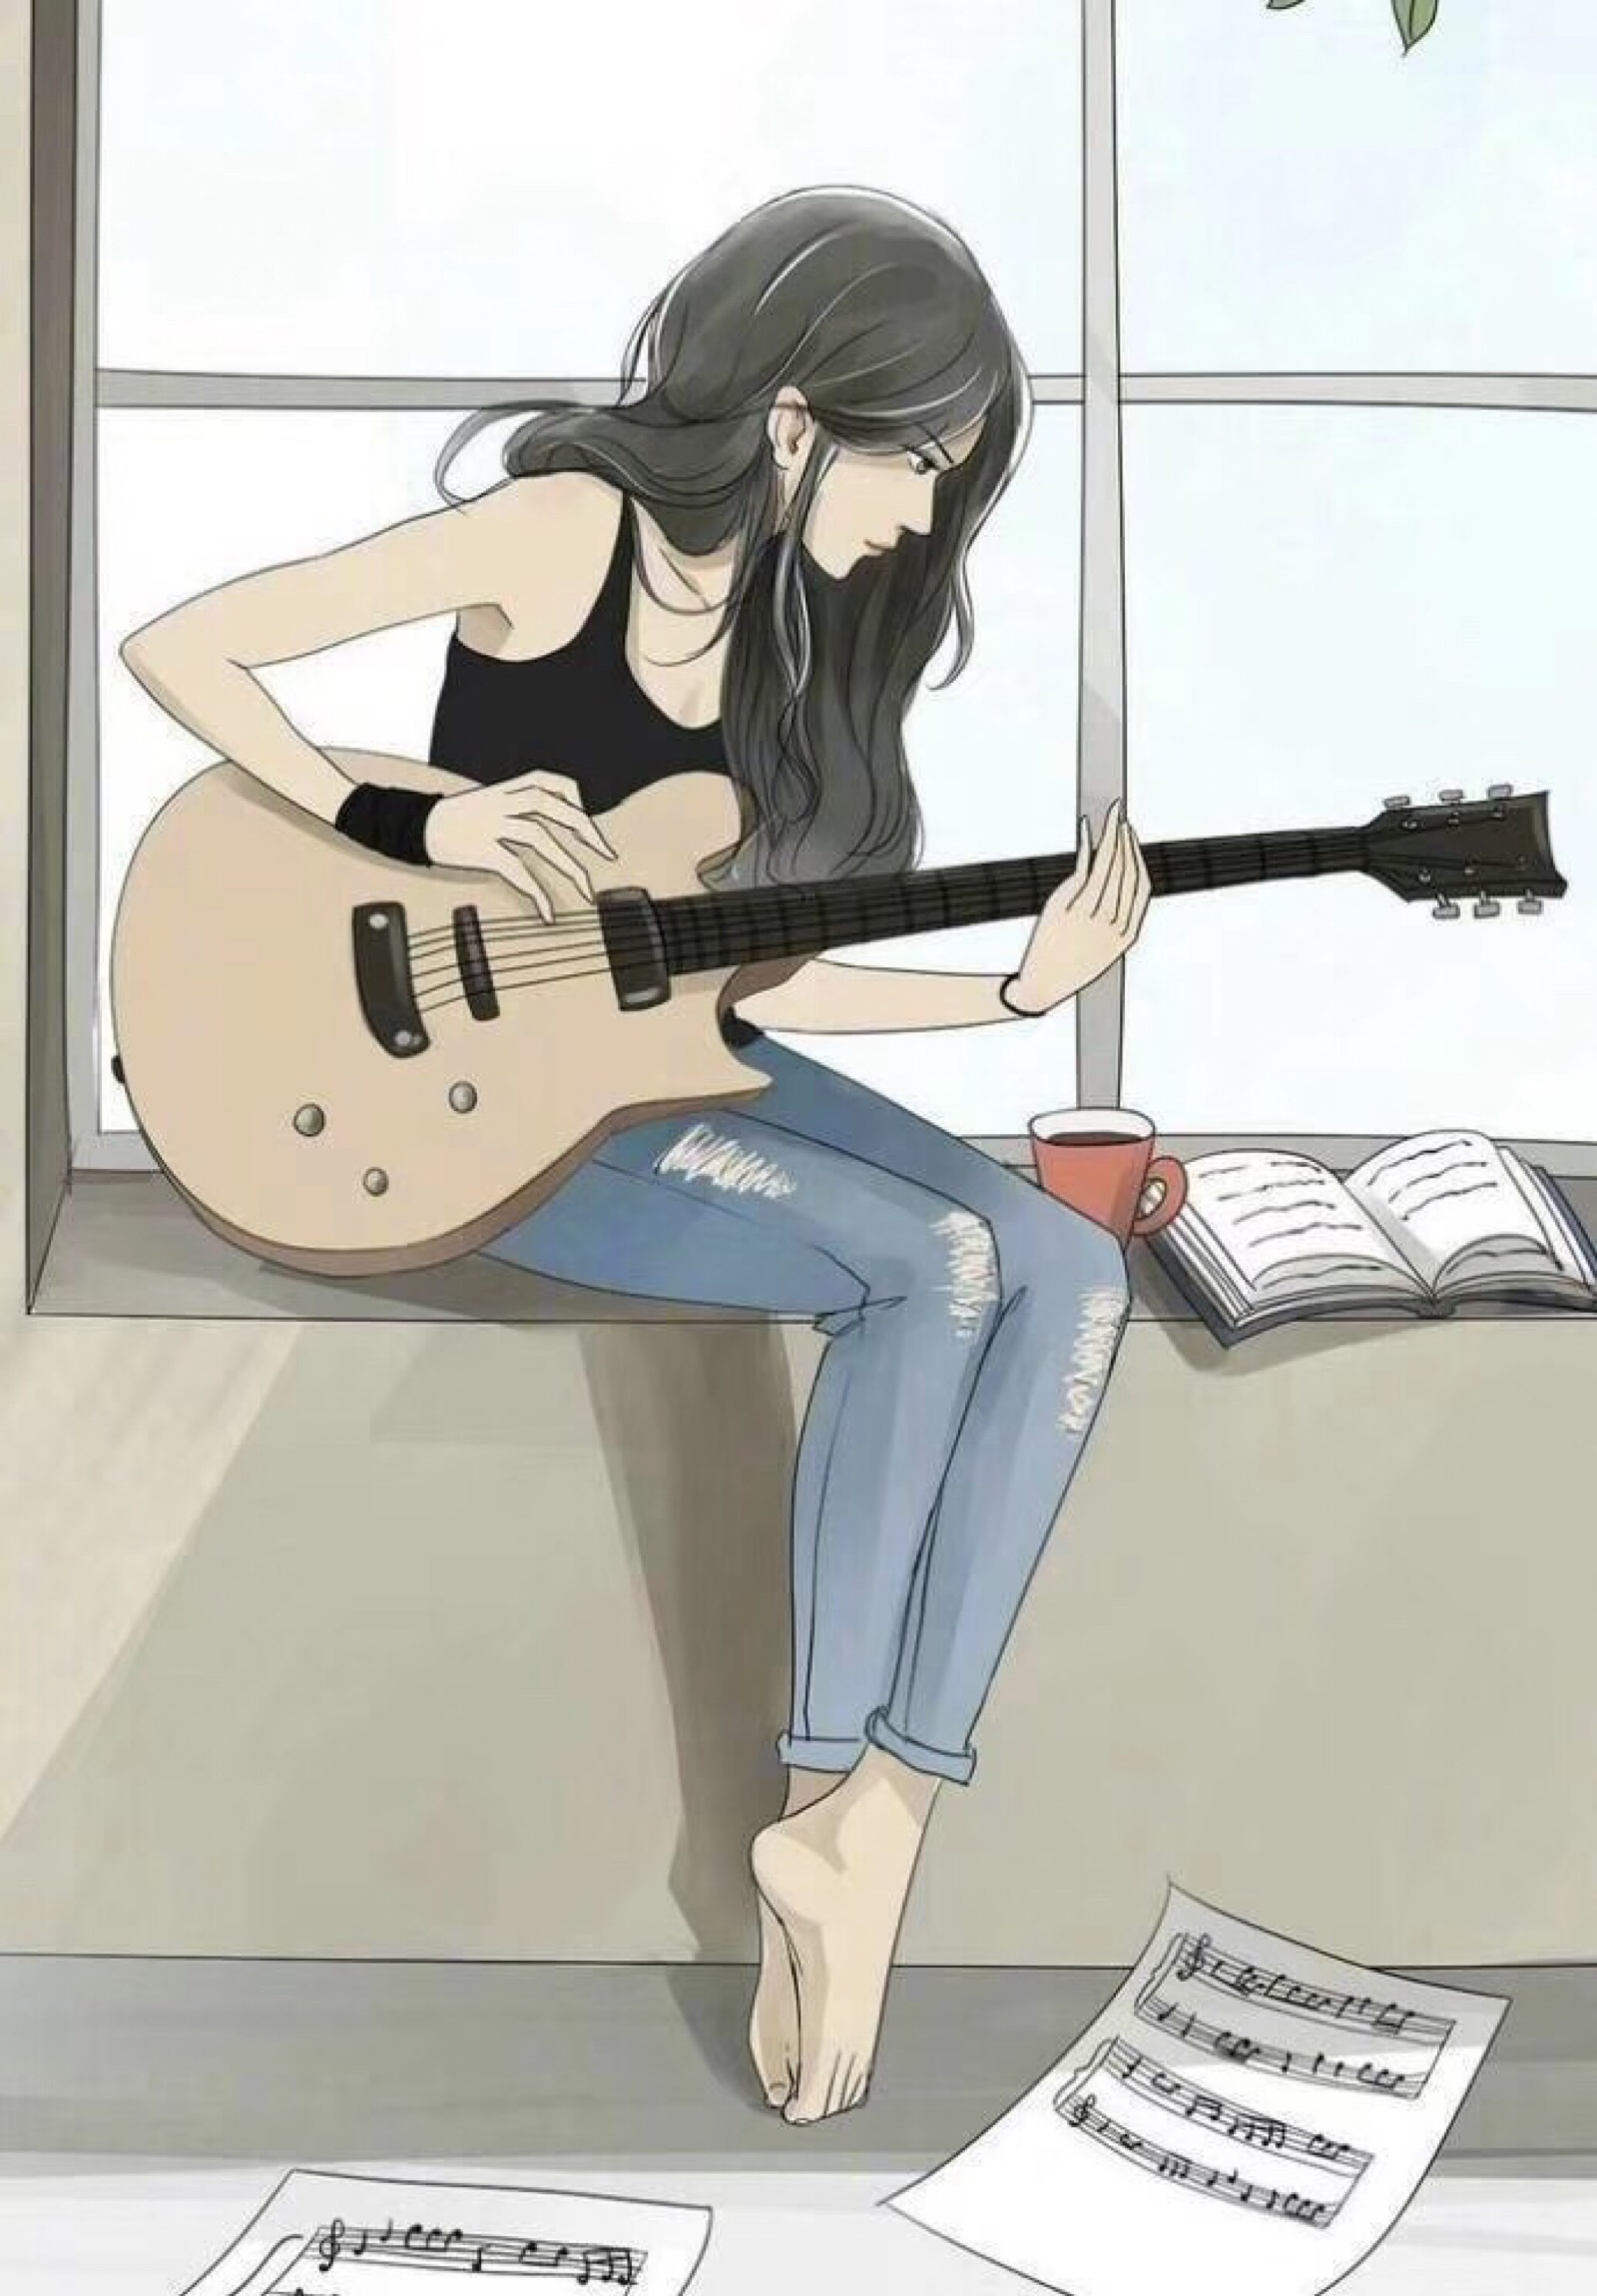 音乐吉他动漫女孩高清壁纸1 - 1920x1200 壁纸下载 - 音乐吉他动漫女孩高清壁纸 - 动漫壁纸 - V3壁纸站